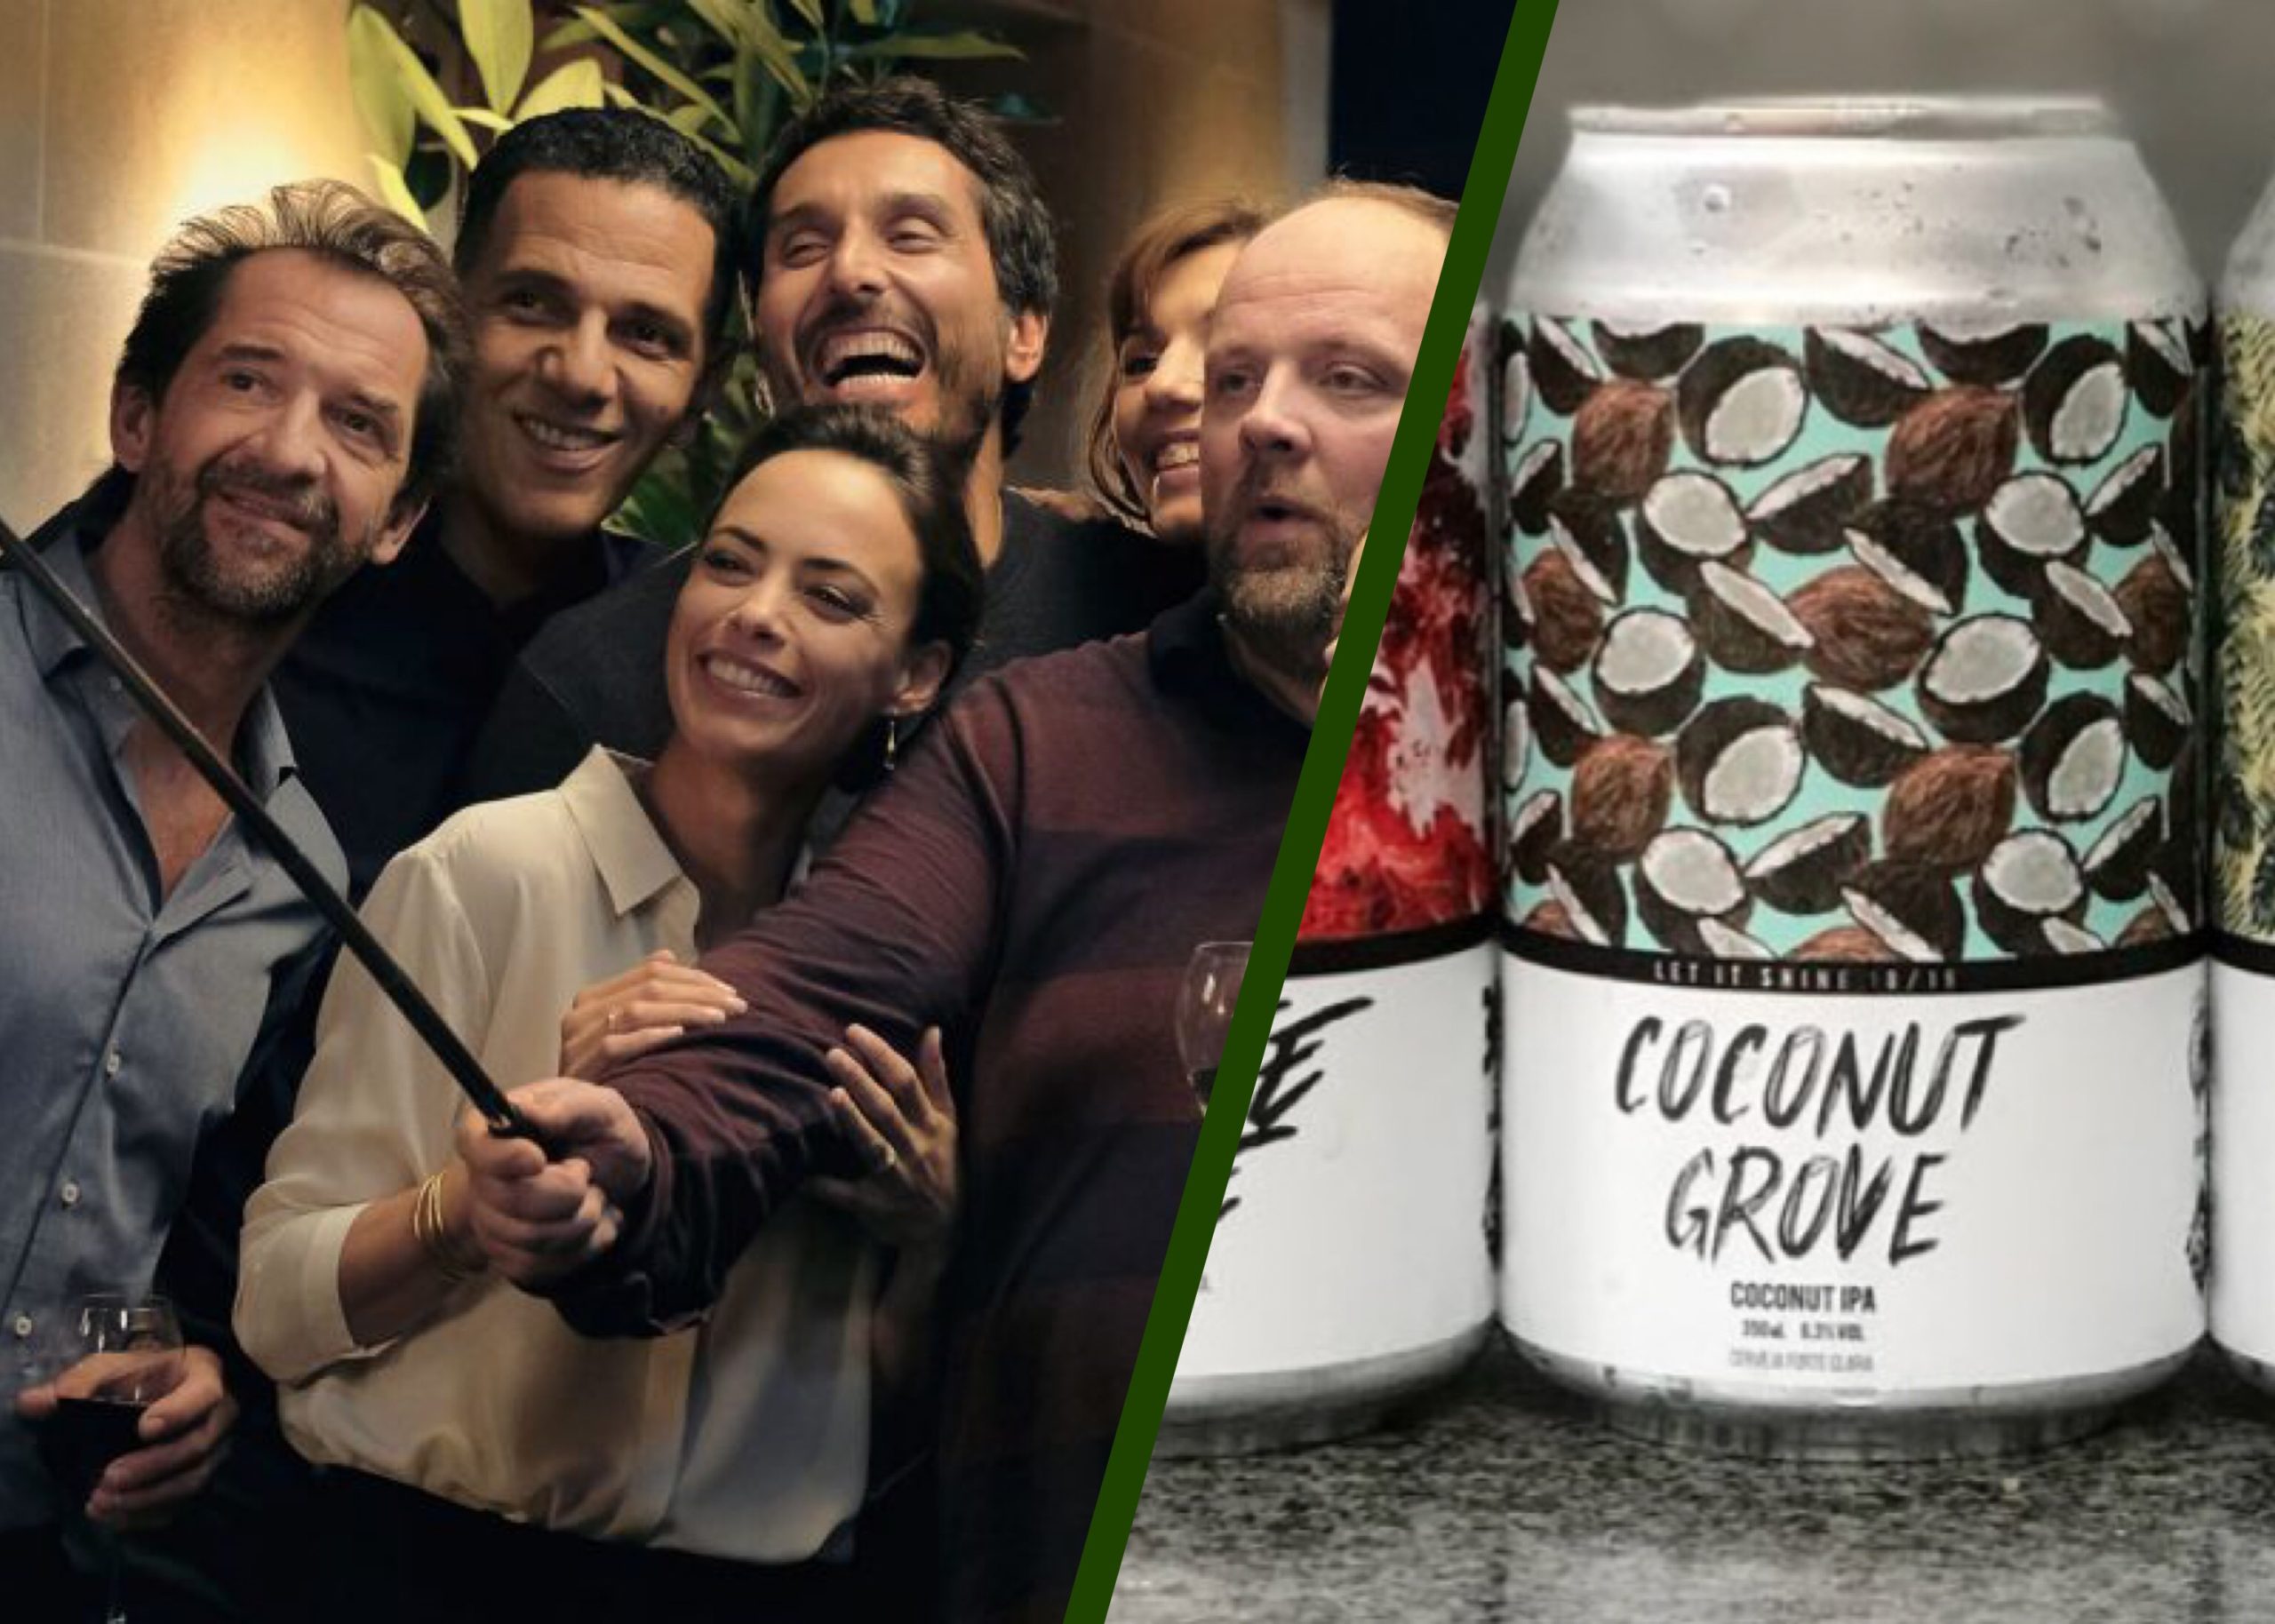 Nada a Esconder e a cerveja Coconut Grove são as dicas desta sexta-feira na coluna de Cinema do site Cerveja & Gastronomia - Foto: Montagem com Reprodução/netflix e Reprodução/Instagram Koala San Brew